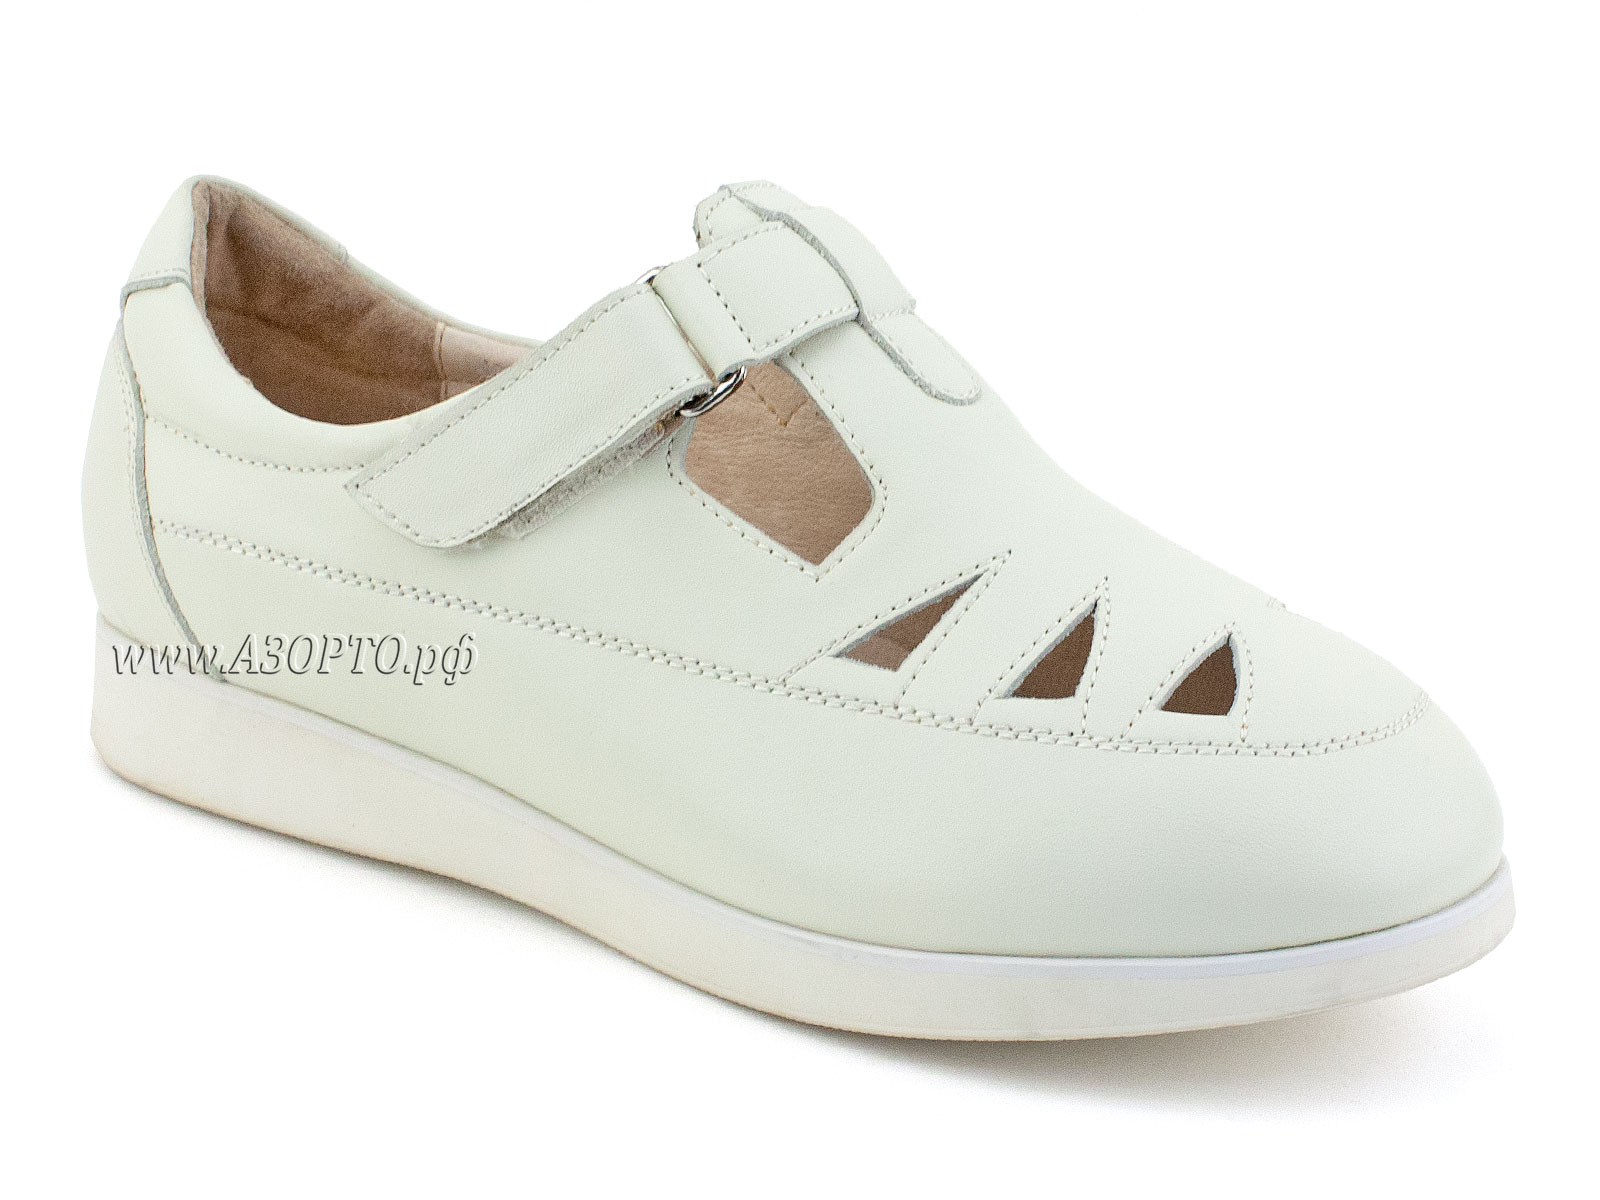 140112 Ортек (Ortek), туфли для взрослых, женские, ригидная подошва, кожа, белый.